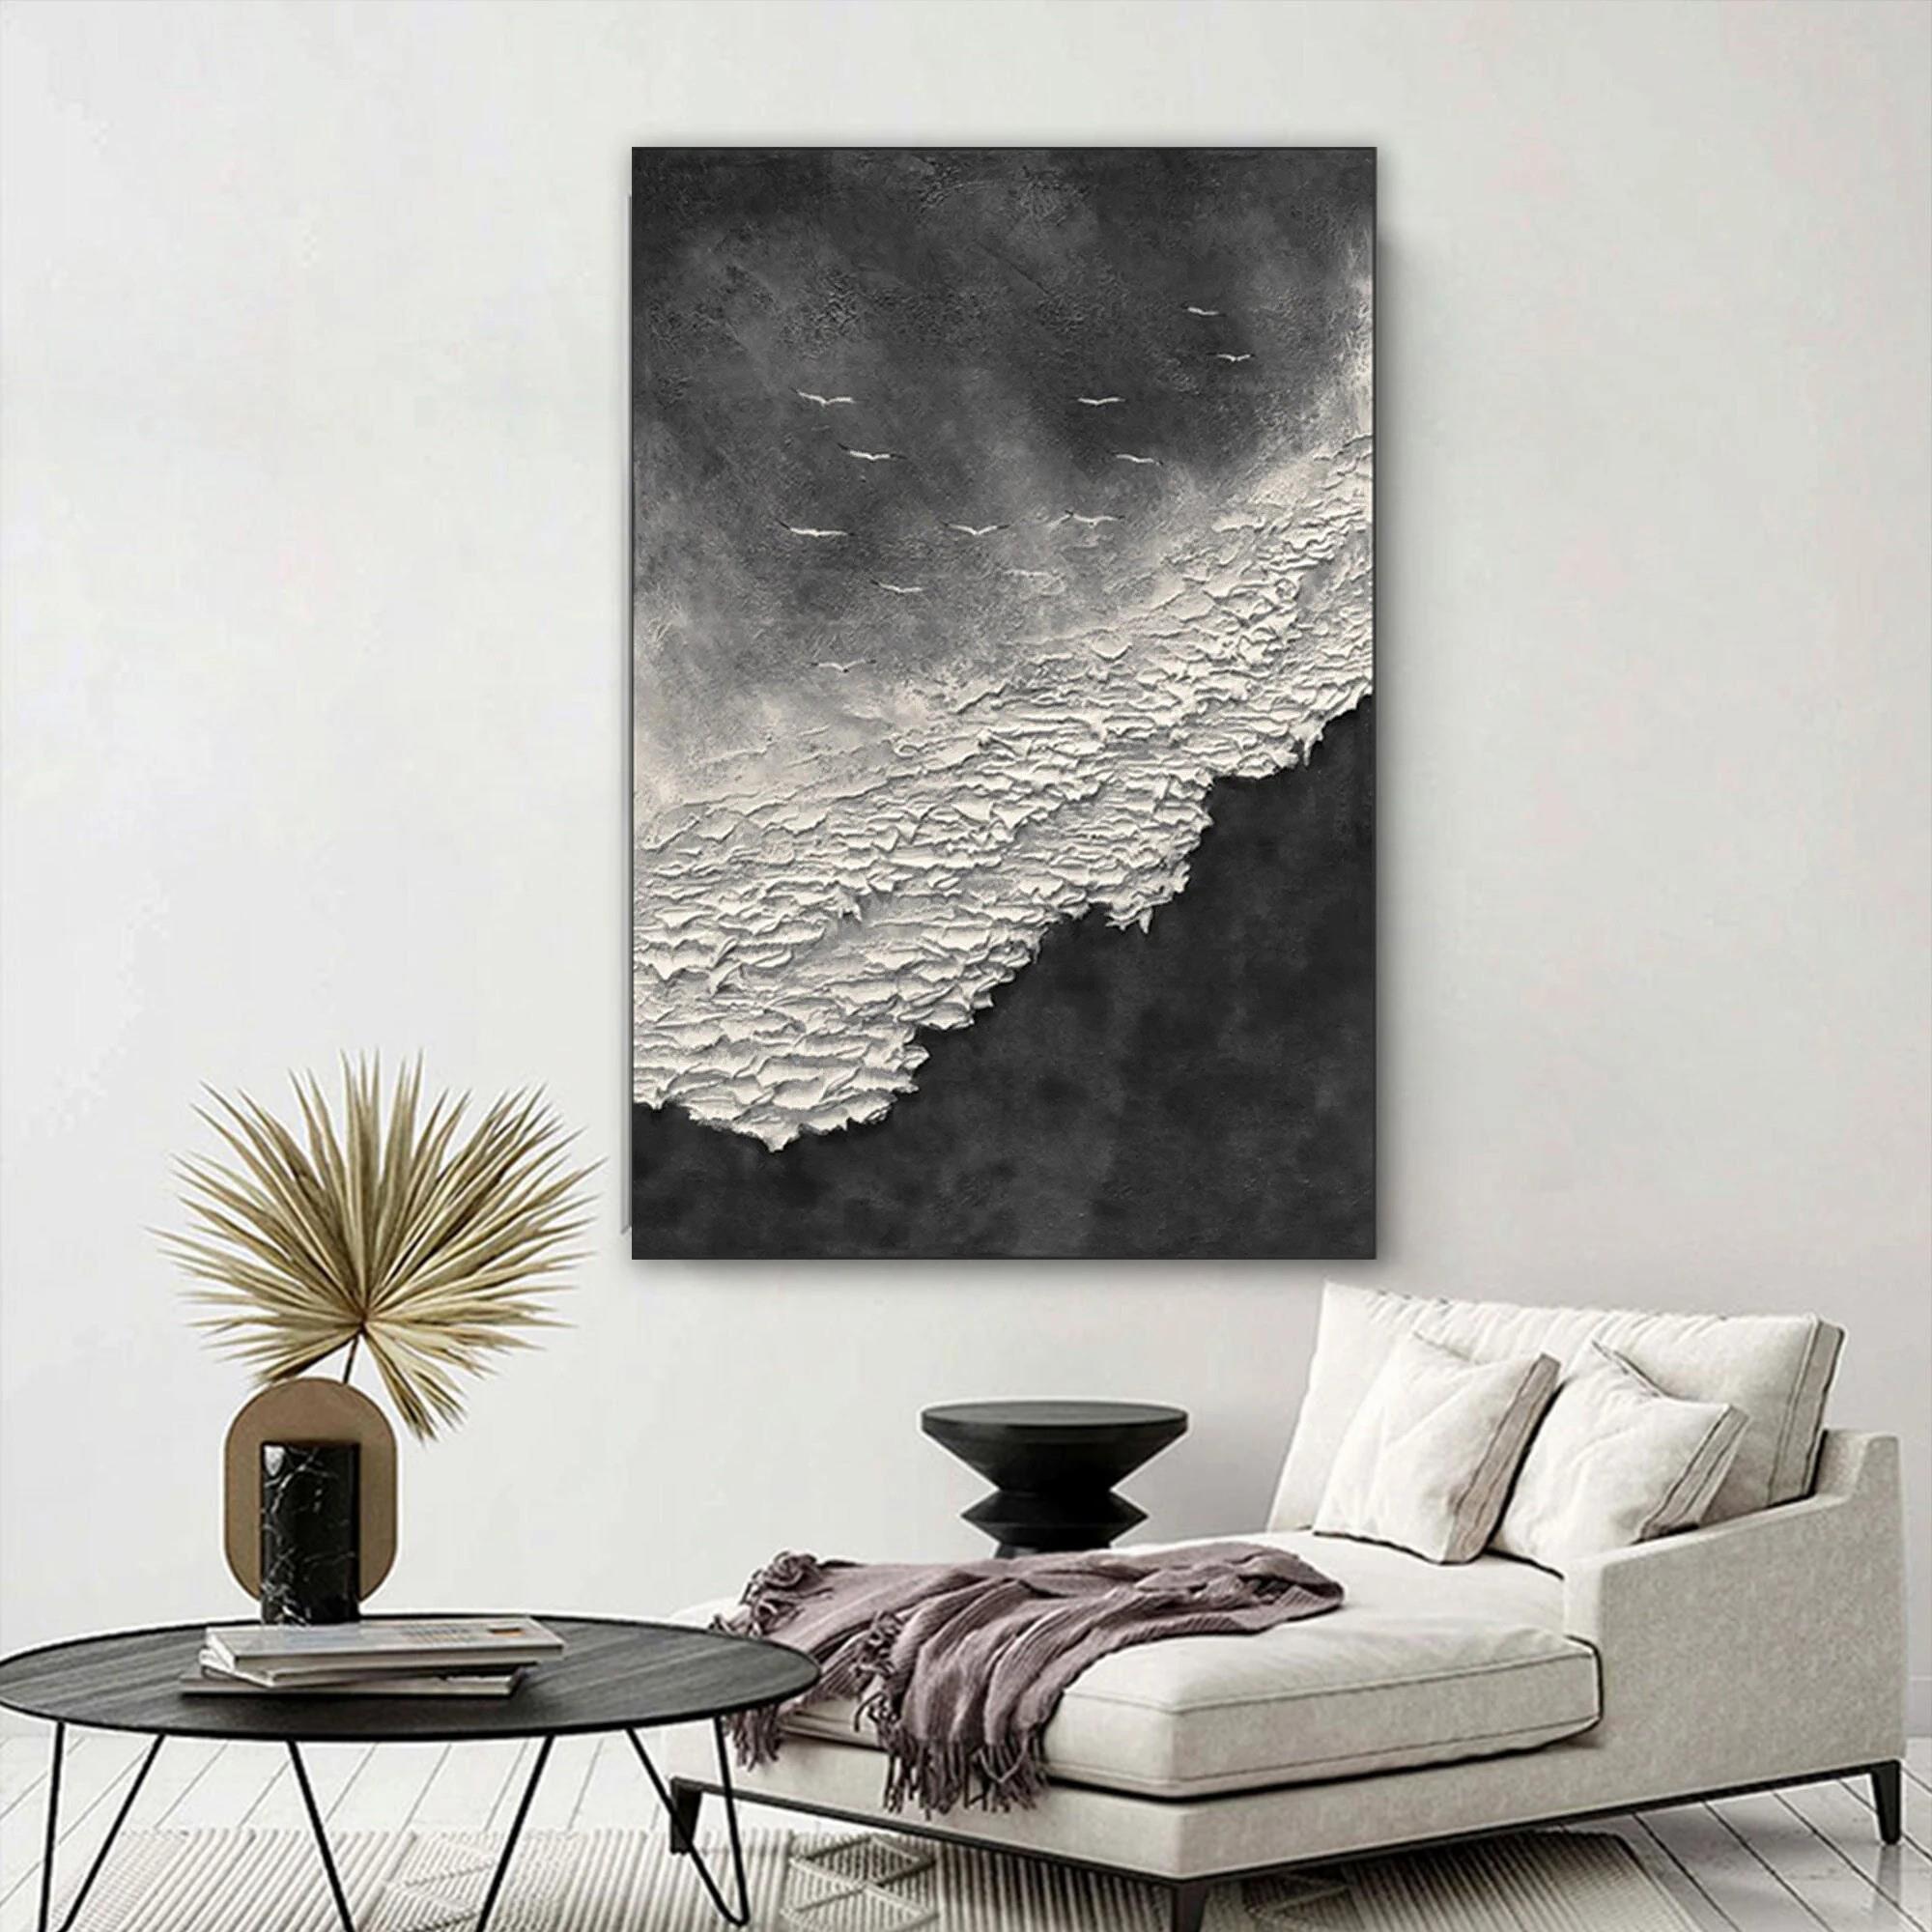 3D Negro Blanco Ola Wabi sabi por Palette Knife playa pájaros gaviota textura de la orilla del mar Pintura al óleo